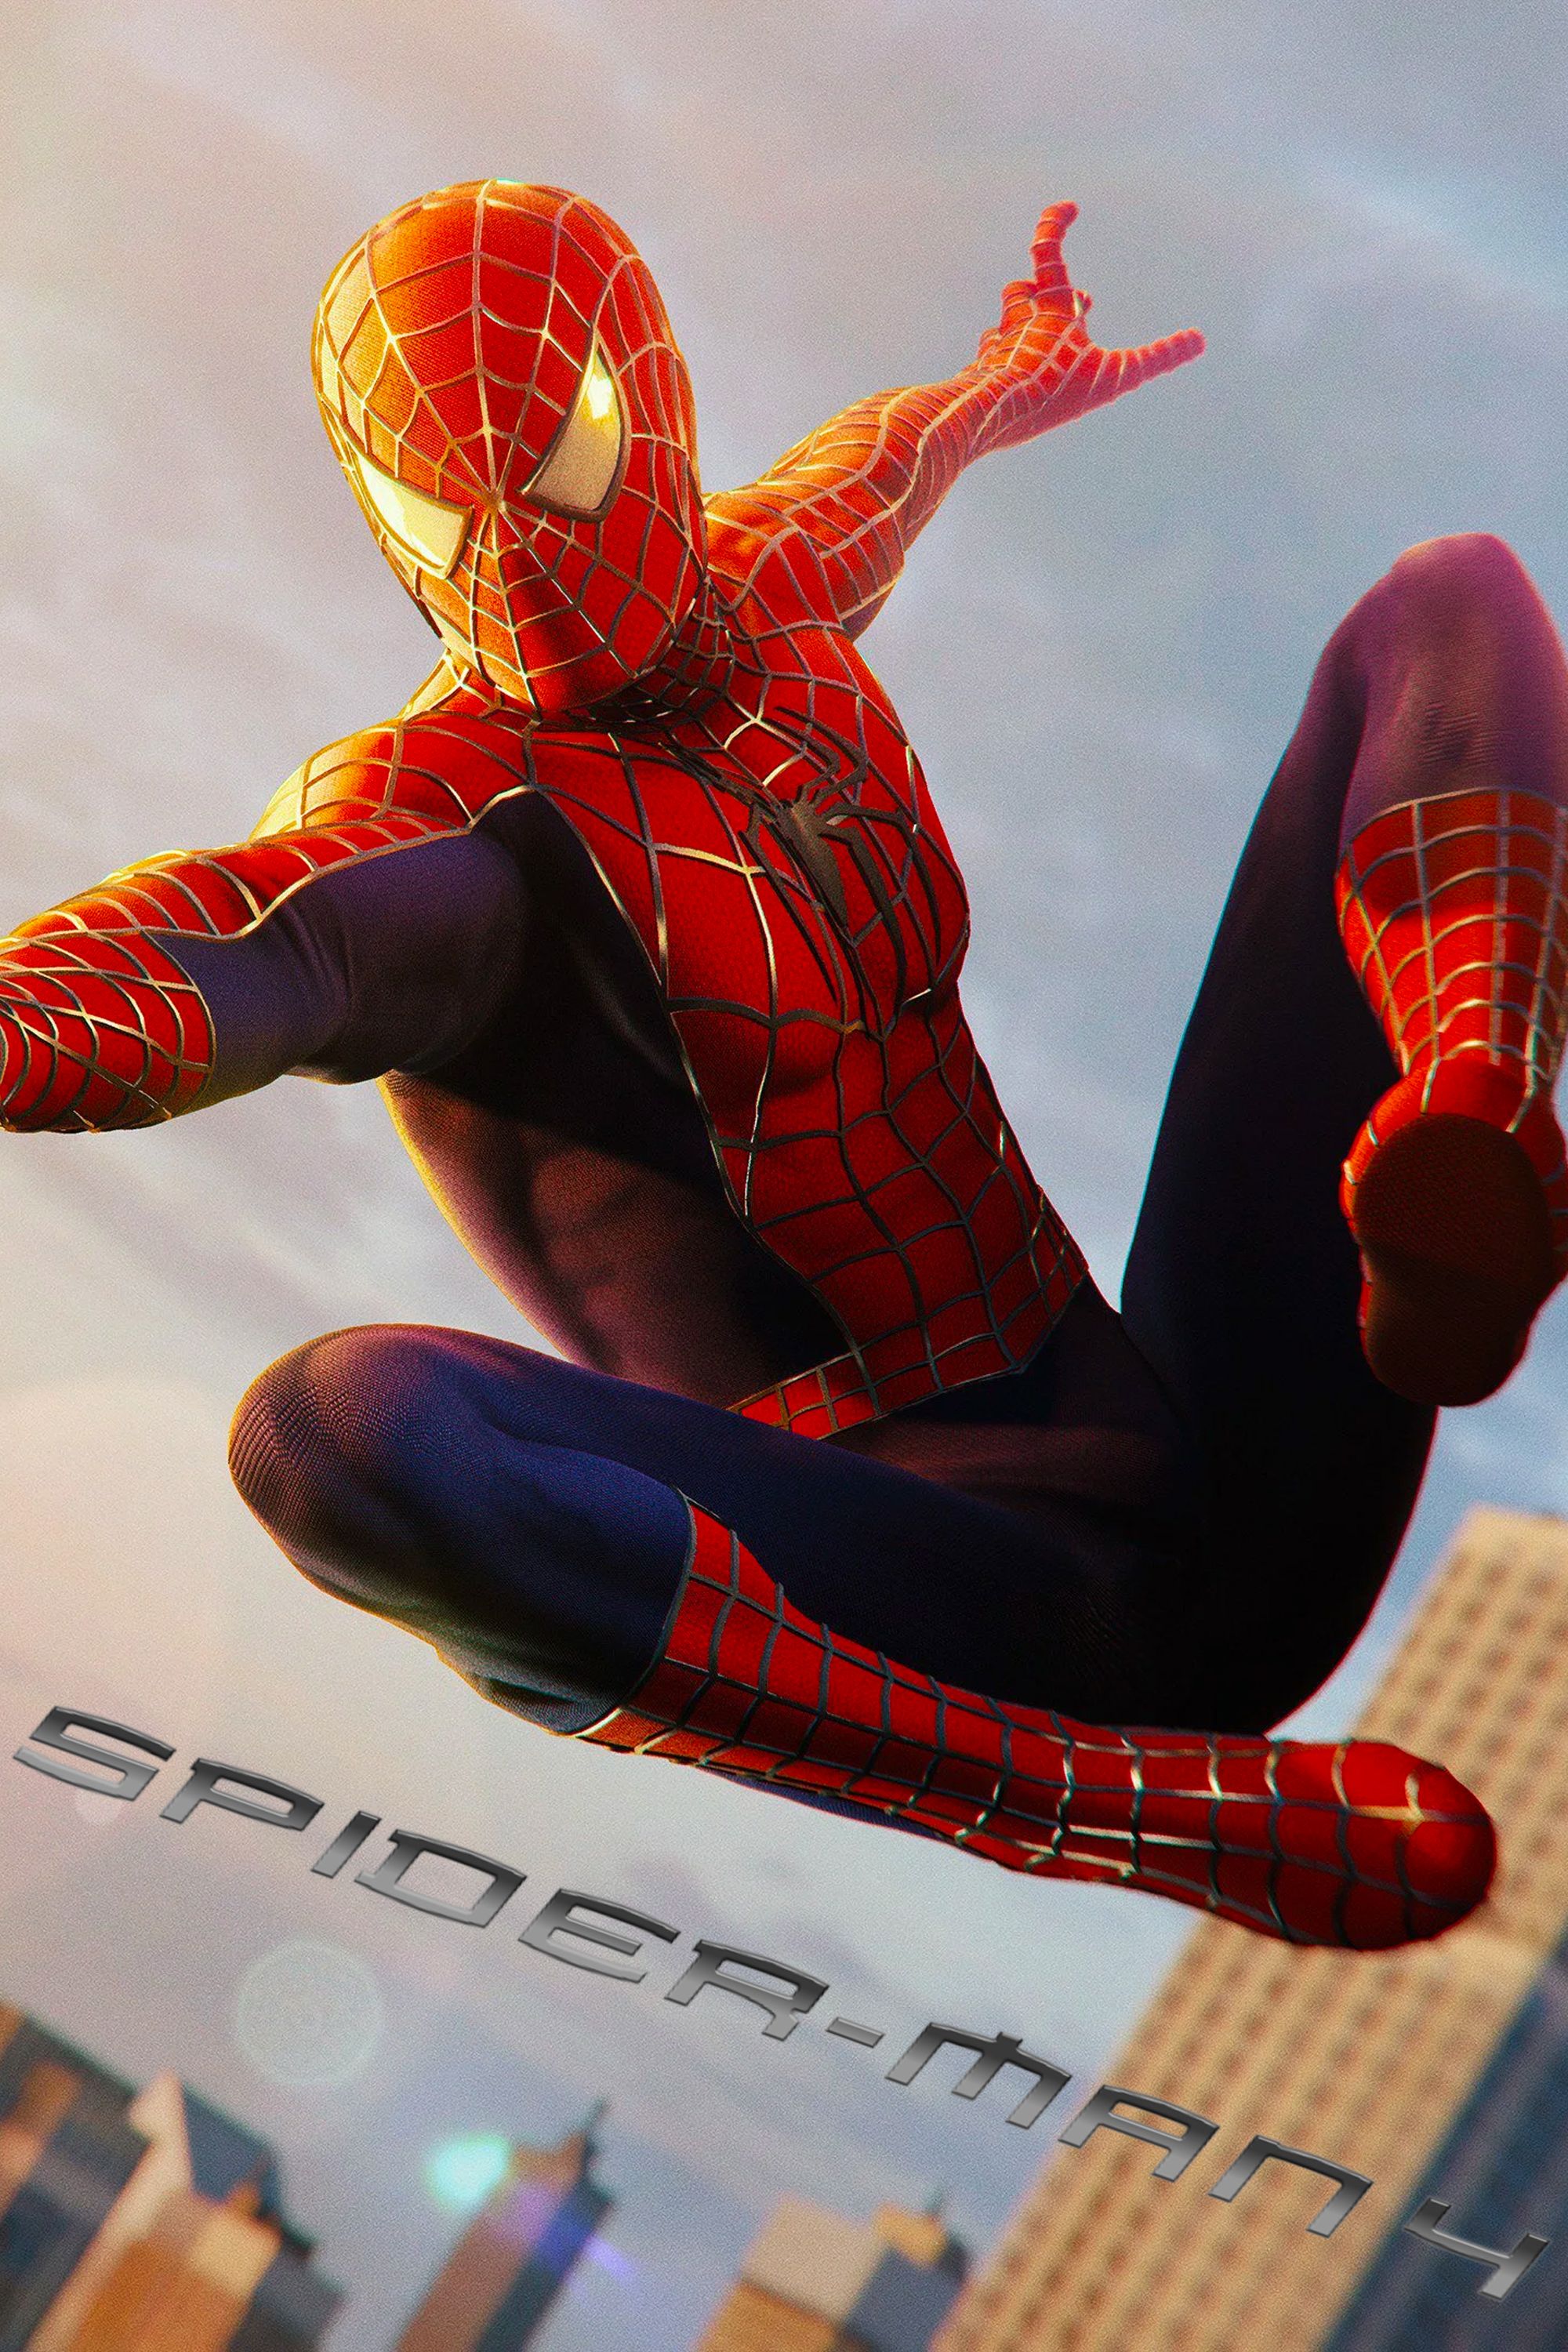 Spider-Man 4 Poster